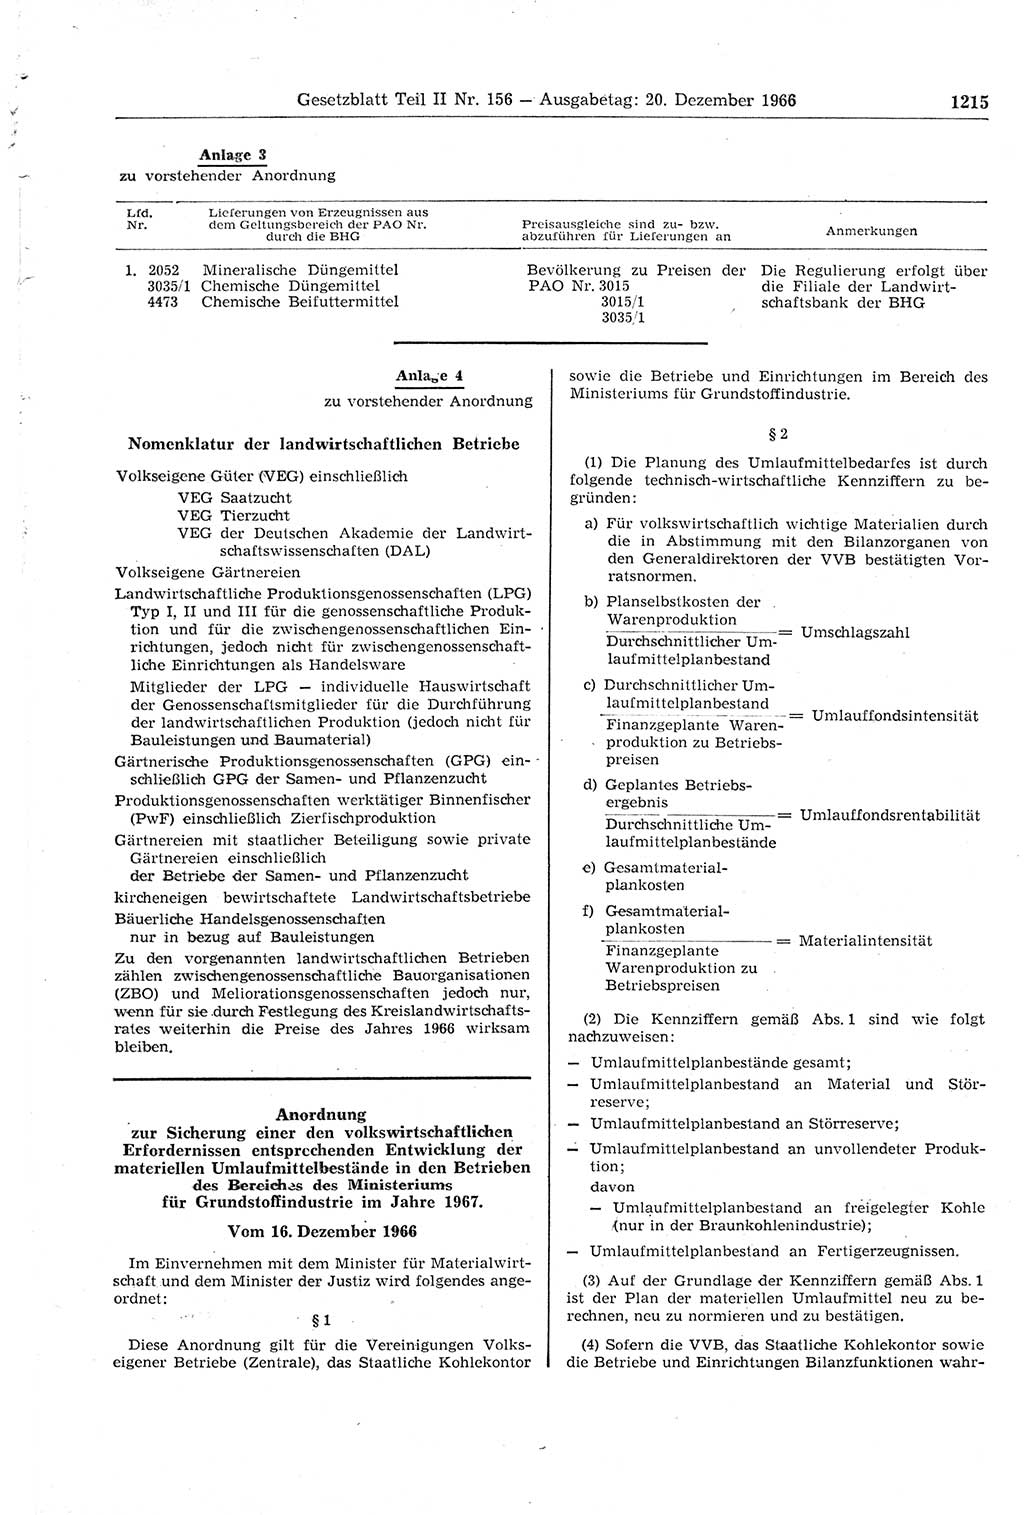 Gesetzblatt (GBl.) der Deutschen Demokratischen Republik (DDR) Teil ⅠⅠ 1966, Seite 1215 (GBl. DDR ⅠⅠ 1966, S. 1215)